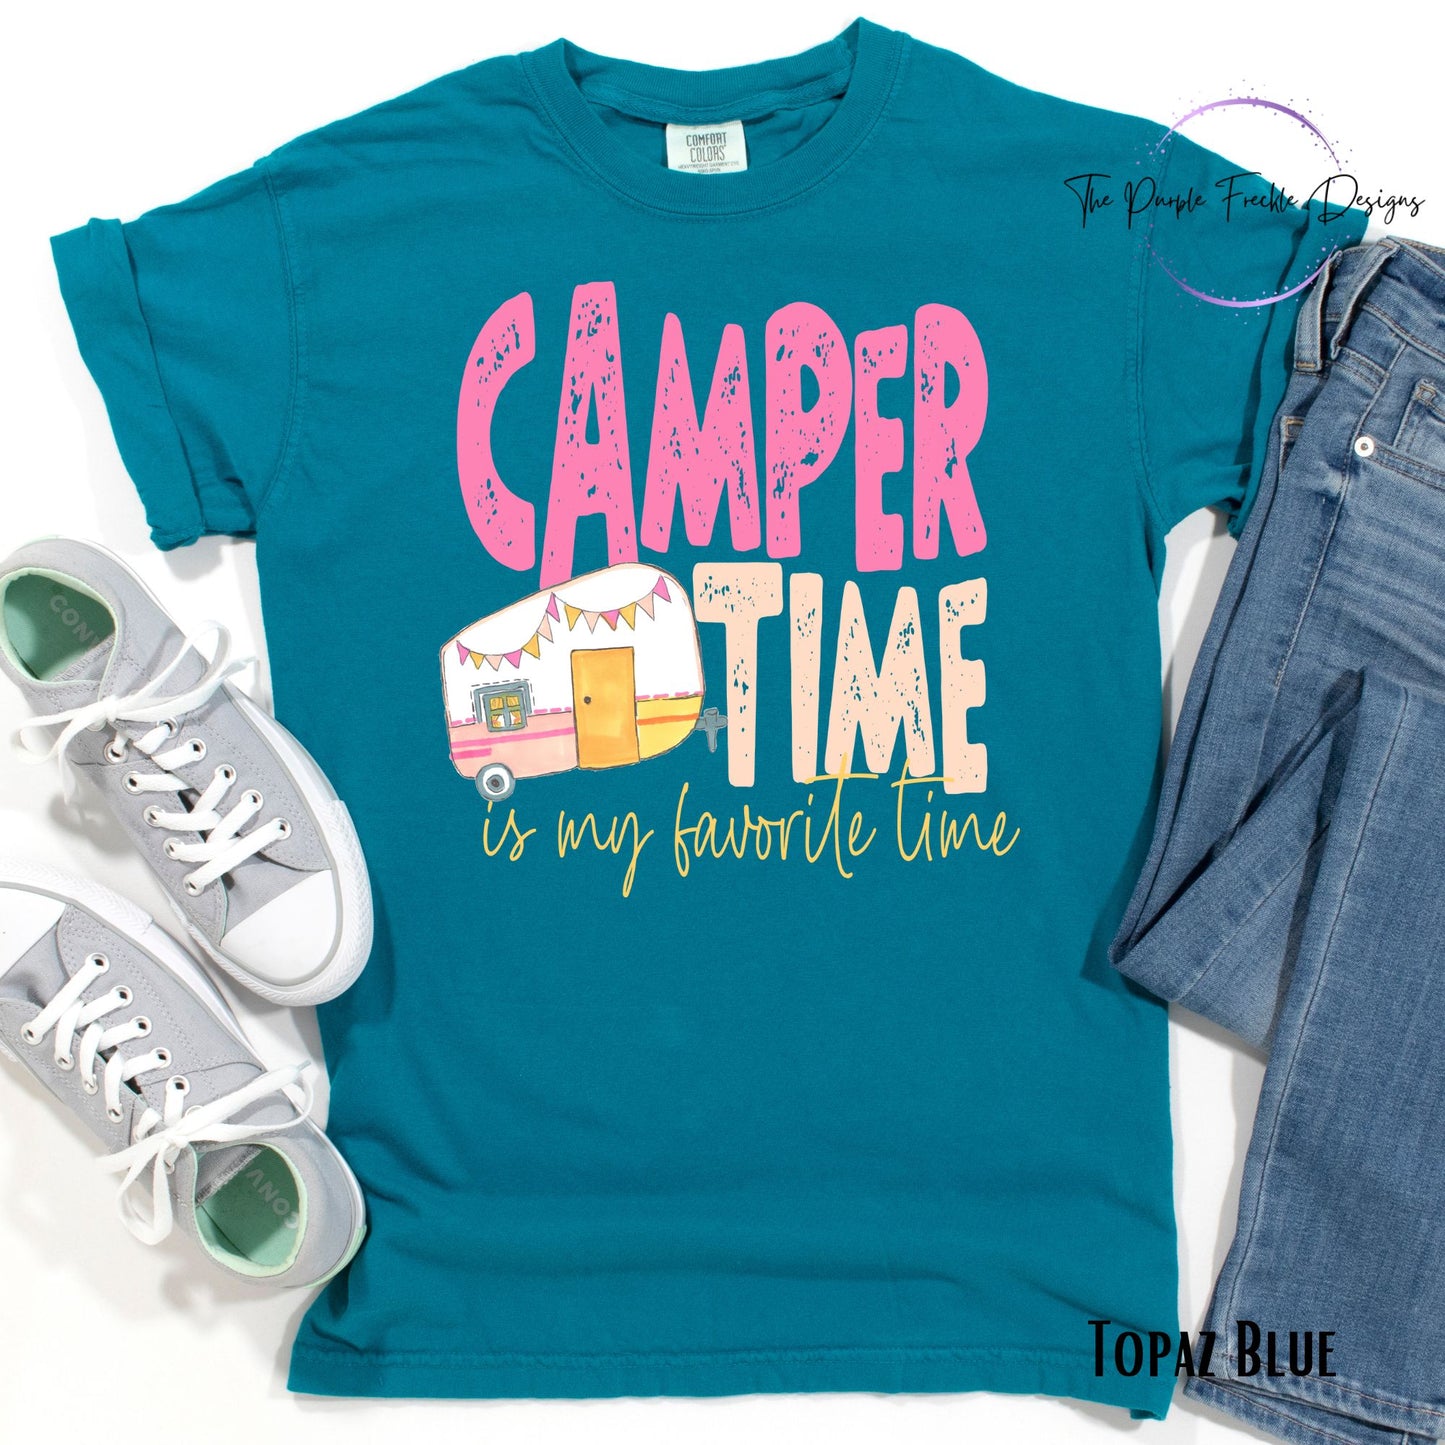 Camper Time